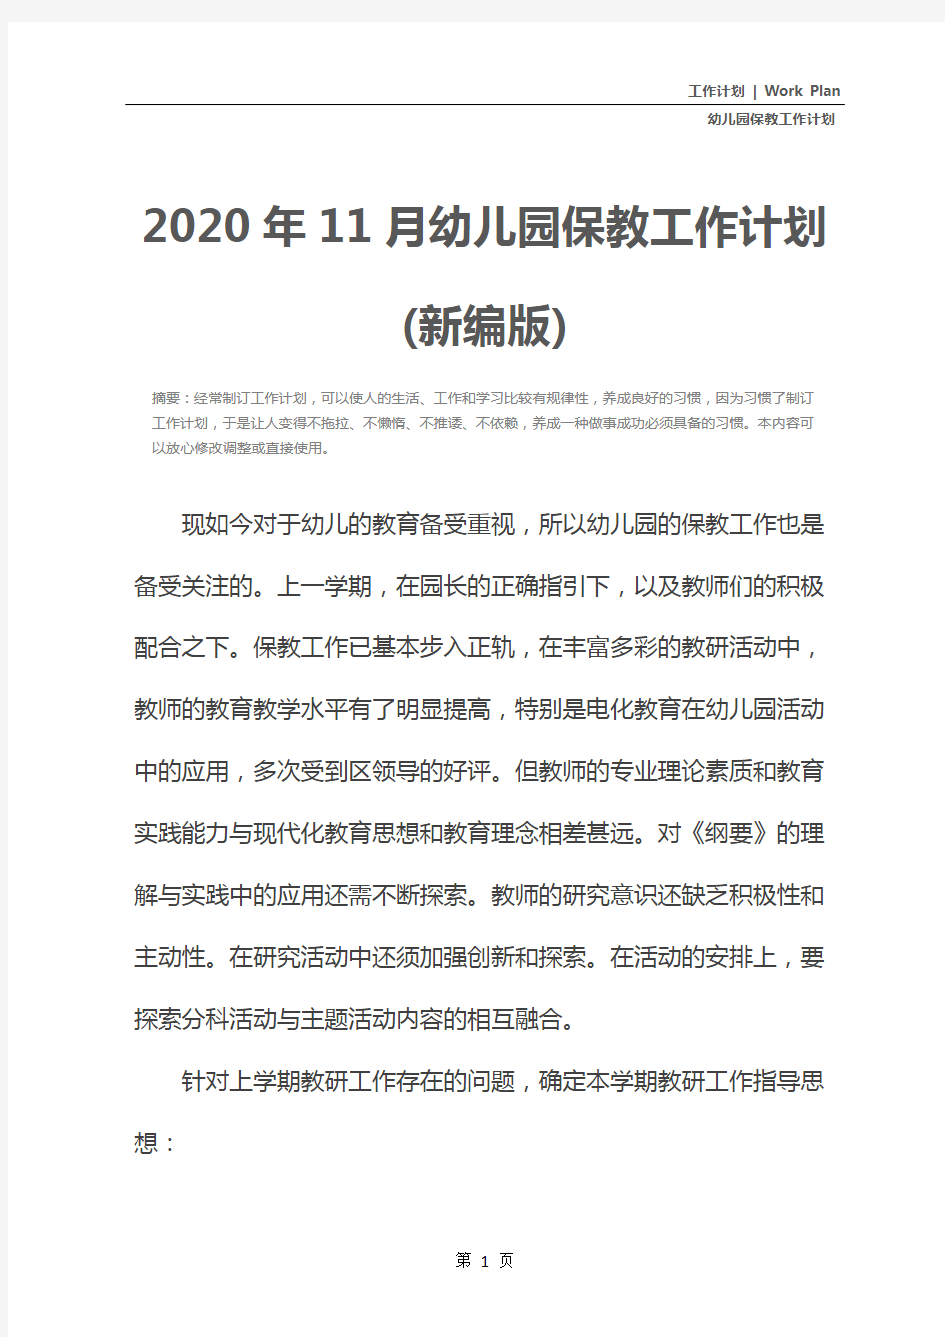 2020年11月幼儿园保教工作计划(新编版)